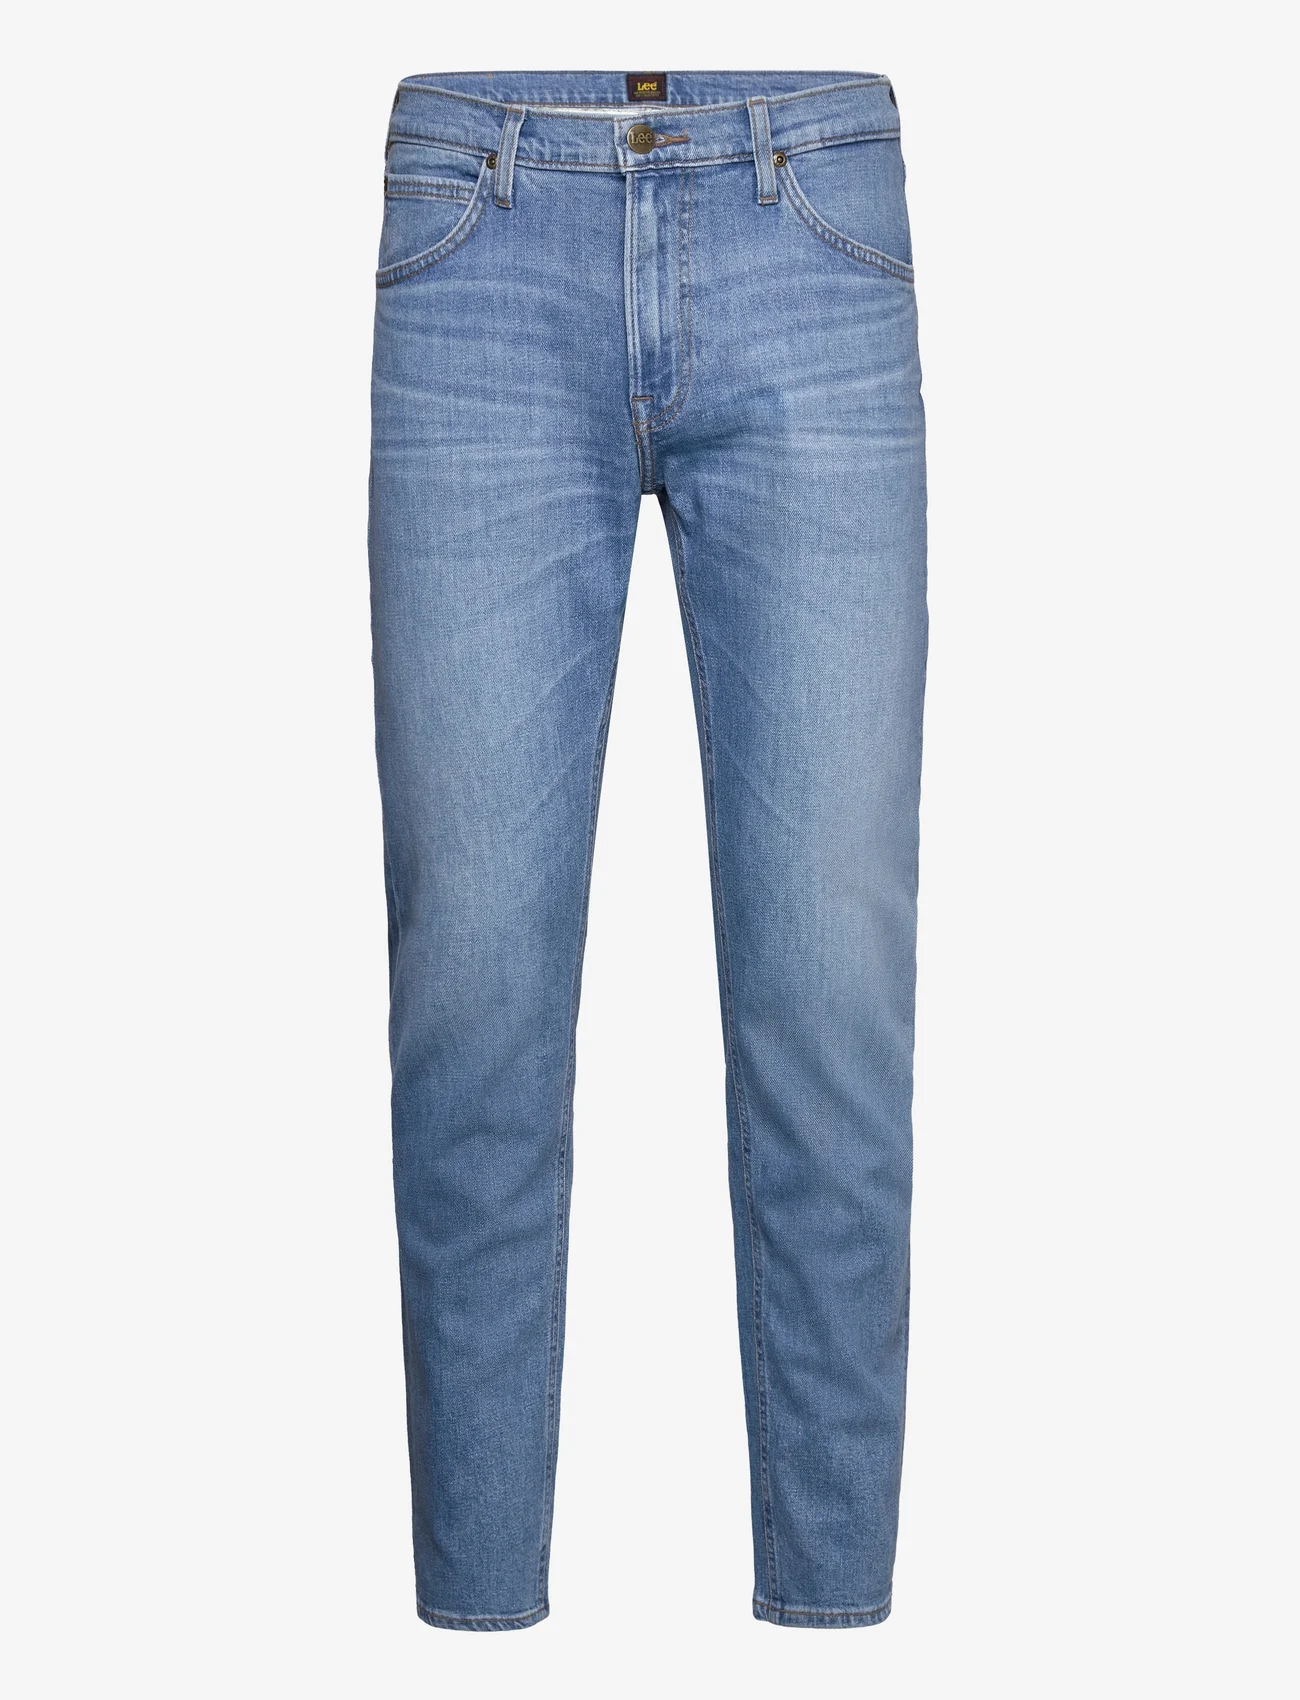 Lee Jeans - DAREN ZIP FLY - regular jeans - powder - 0